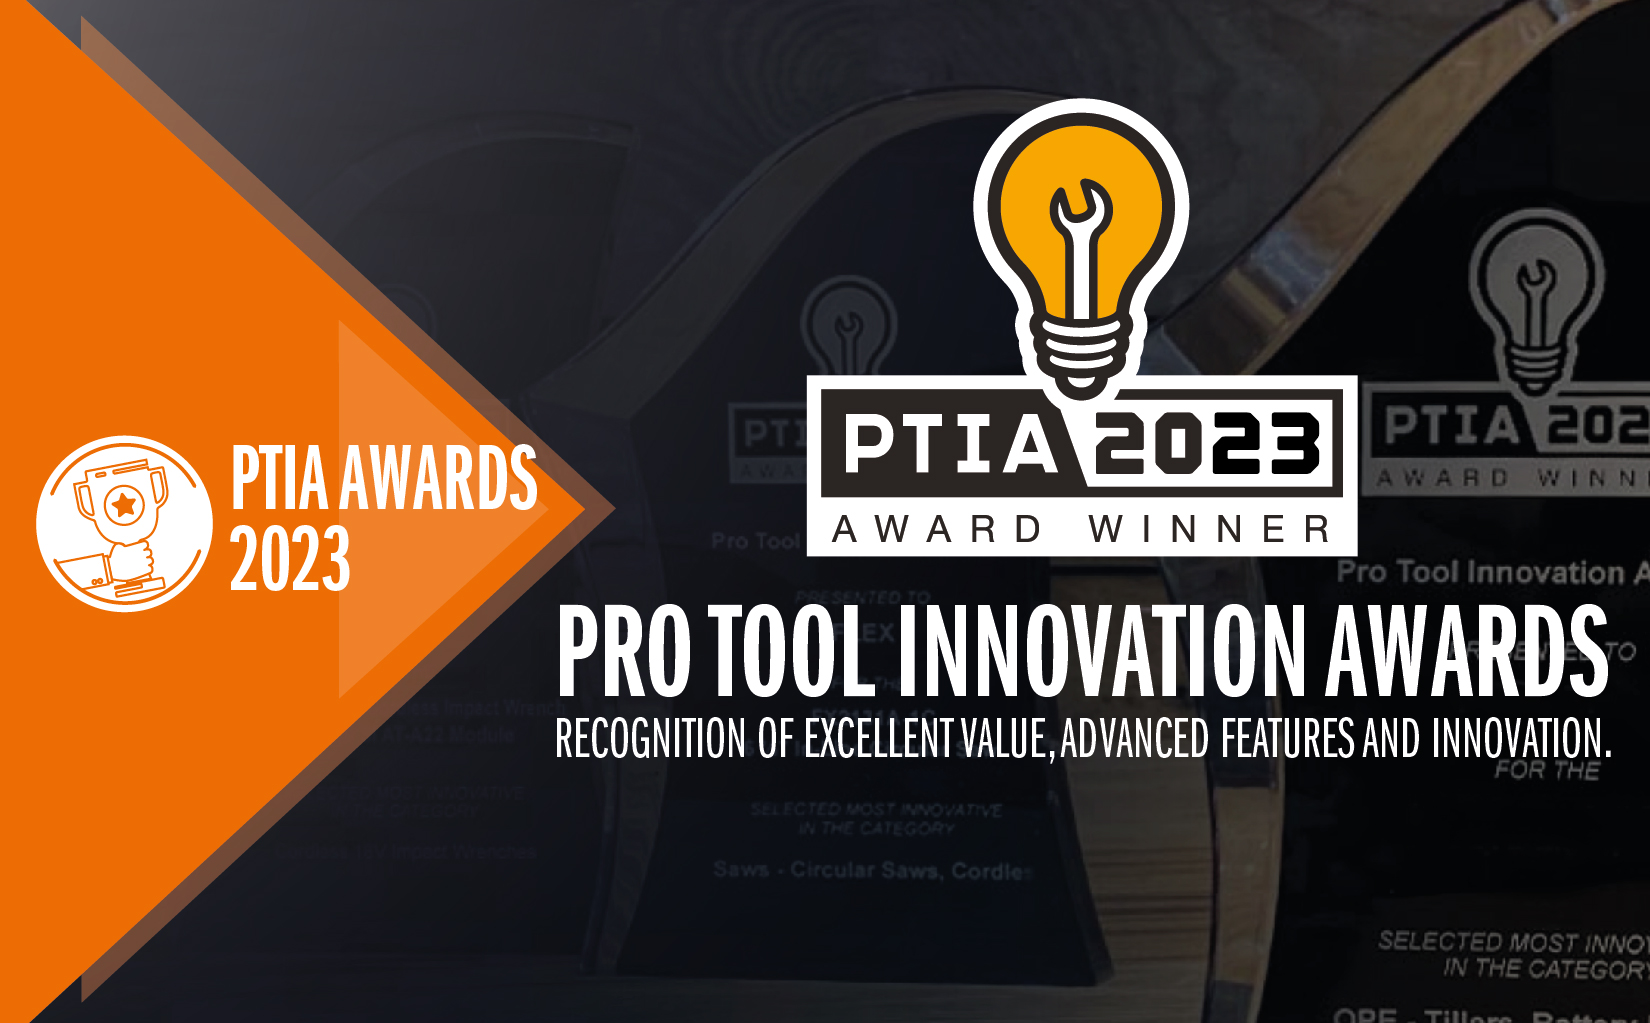 CMT vincitore del 2023 Pro Tool Innovation award per la categoria ITK XTREME